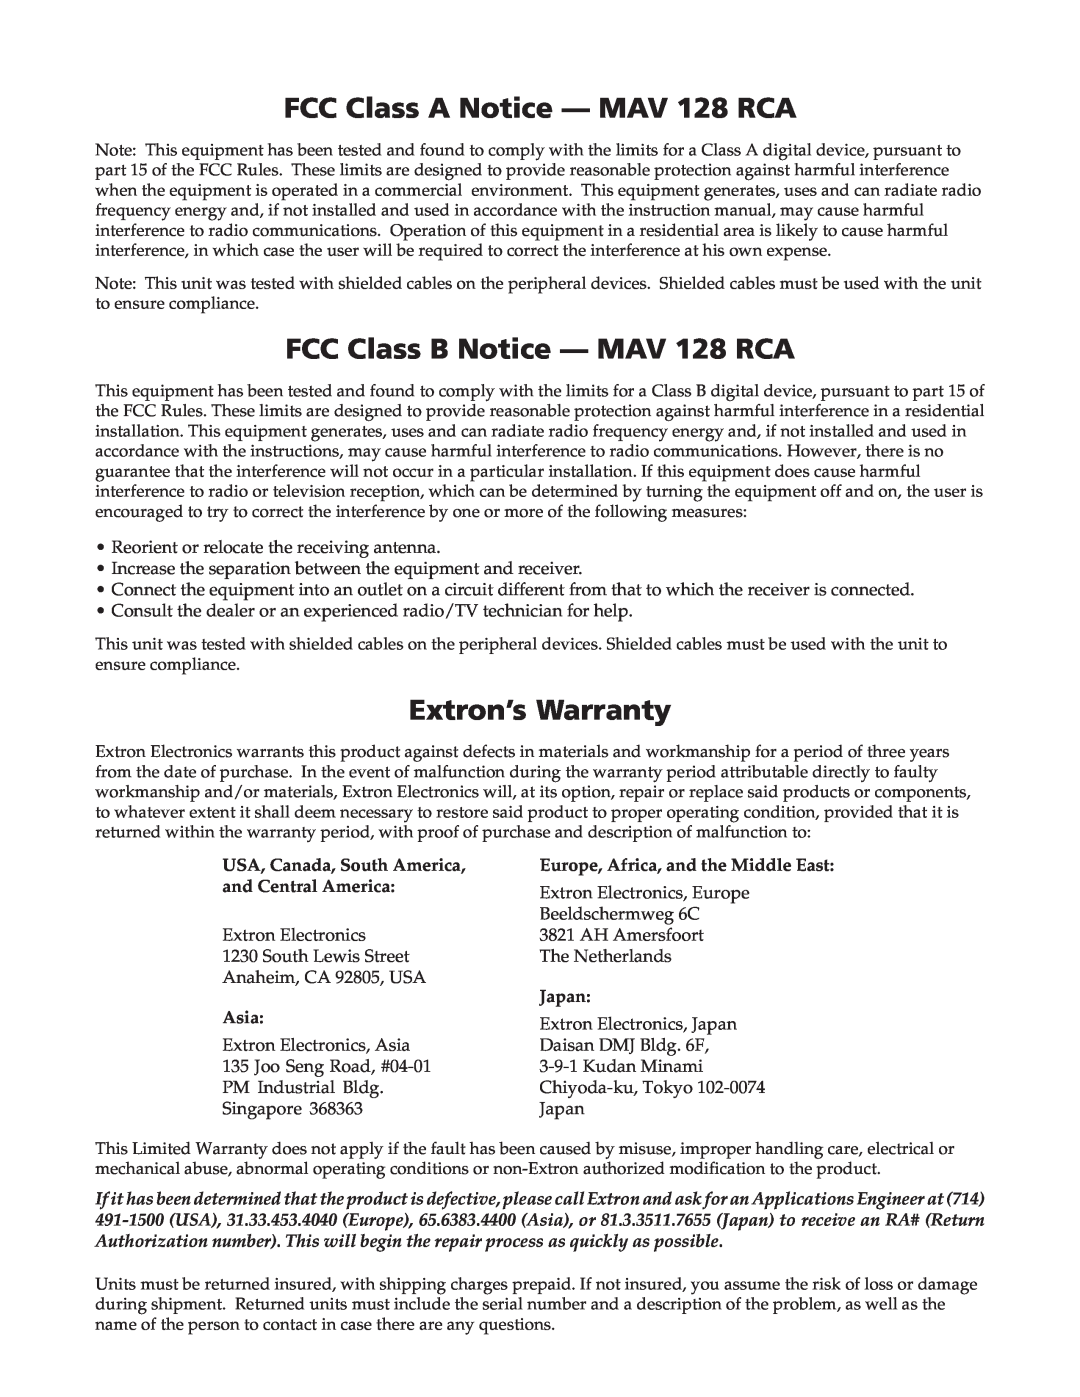 Extron electronic FCC Class A Notice - MAV 128 RCA, FCC Class B Notice - MAV 128 RCA, Extron’s Warranty, Japan, Asia 